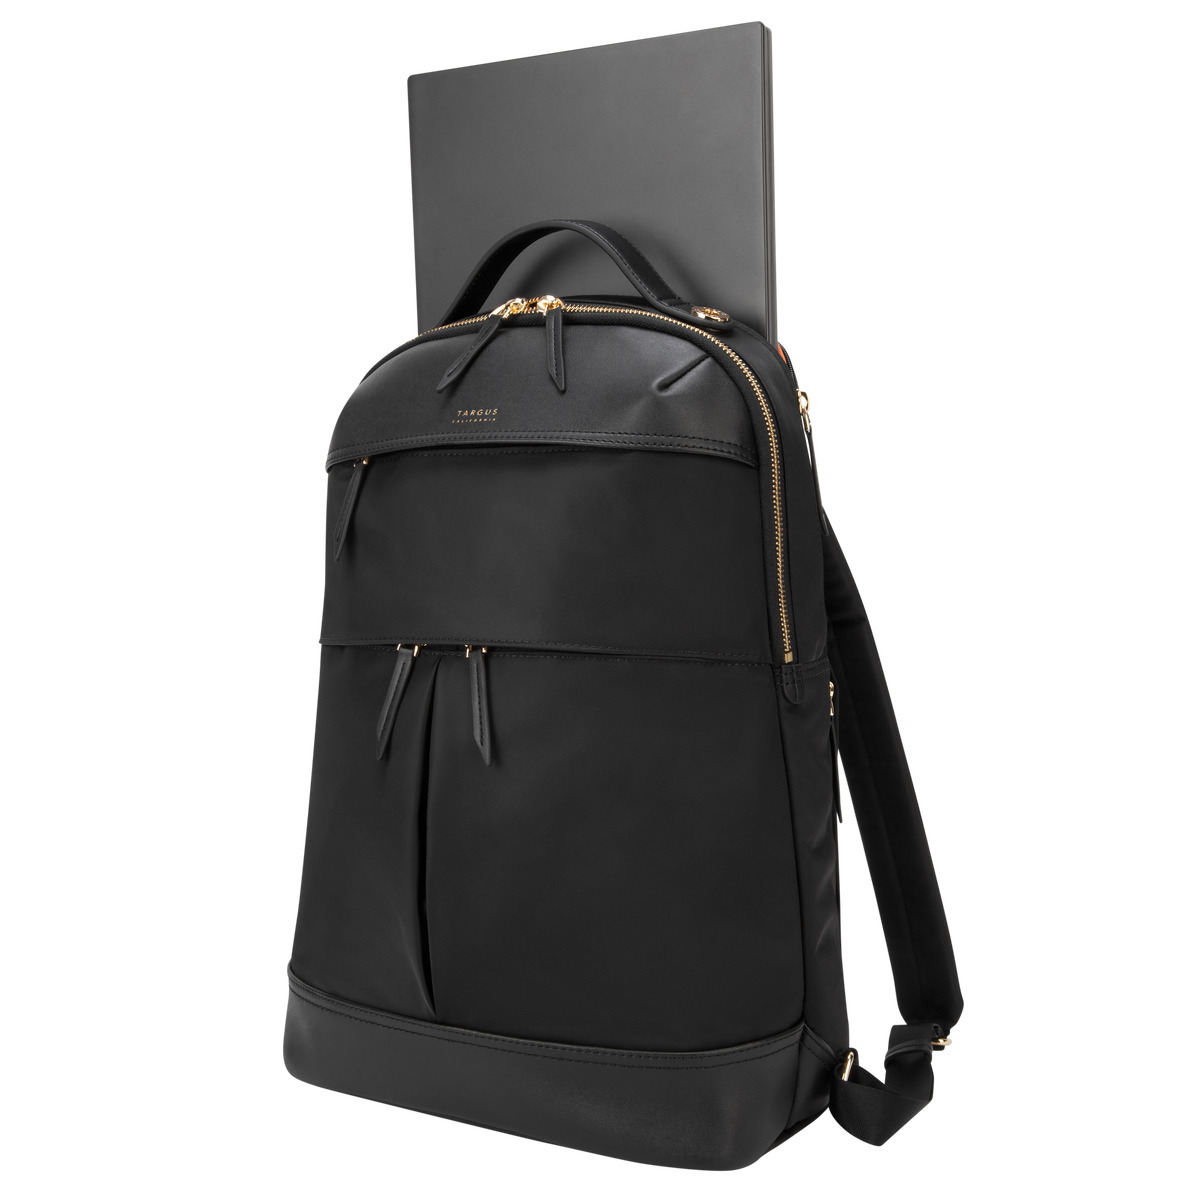 Targus 15" Newport Laptop Backpack, Black - TSB945BT - image 3 of 17